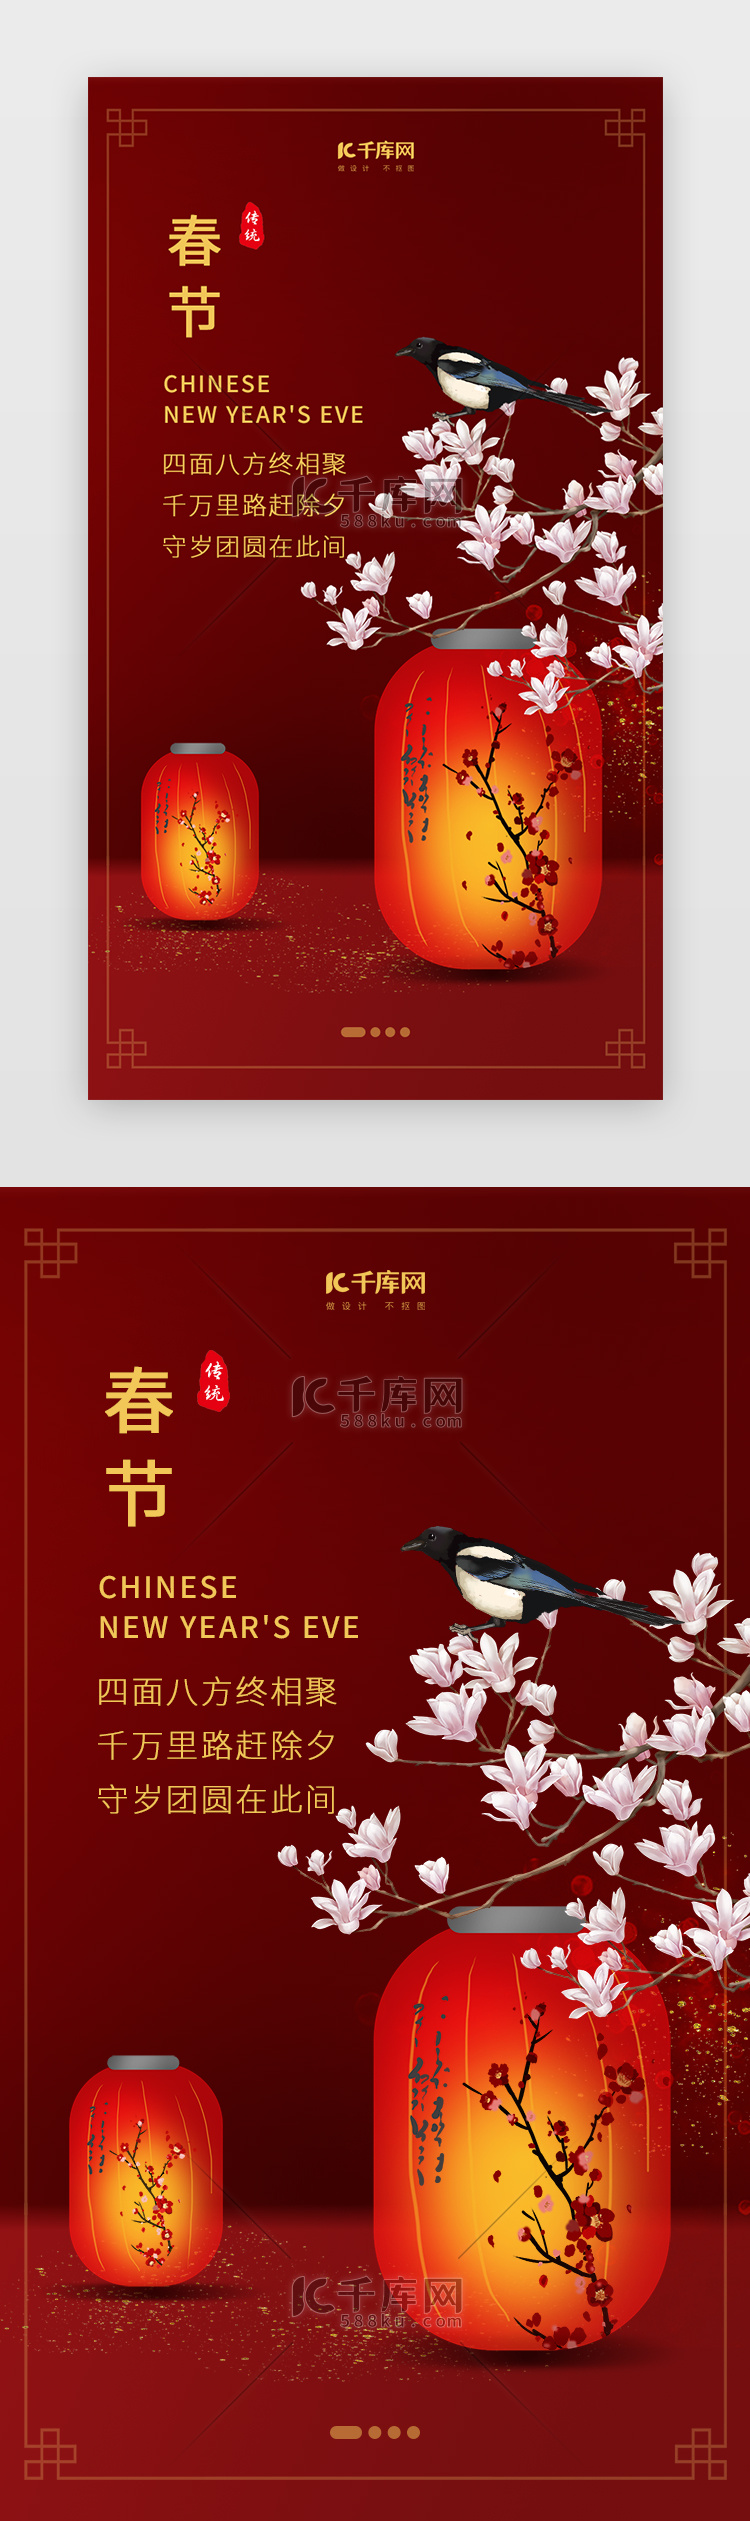 创意中国风春节启动页面